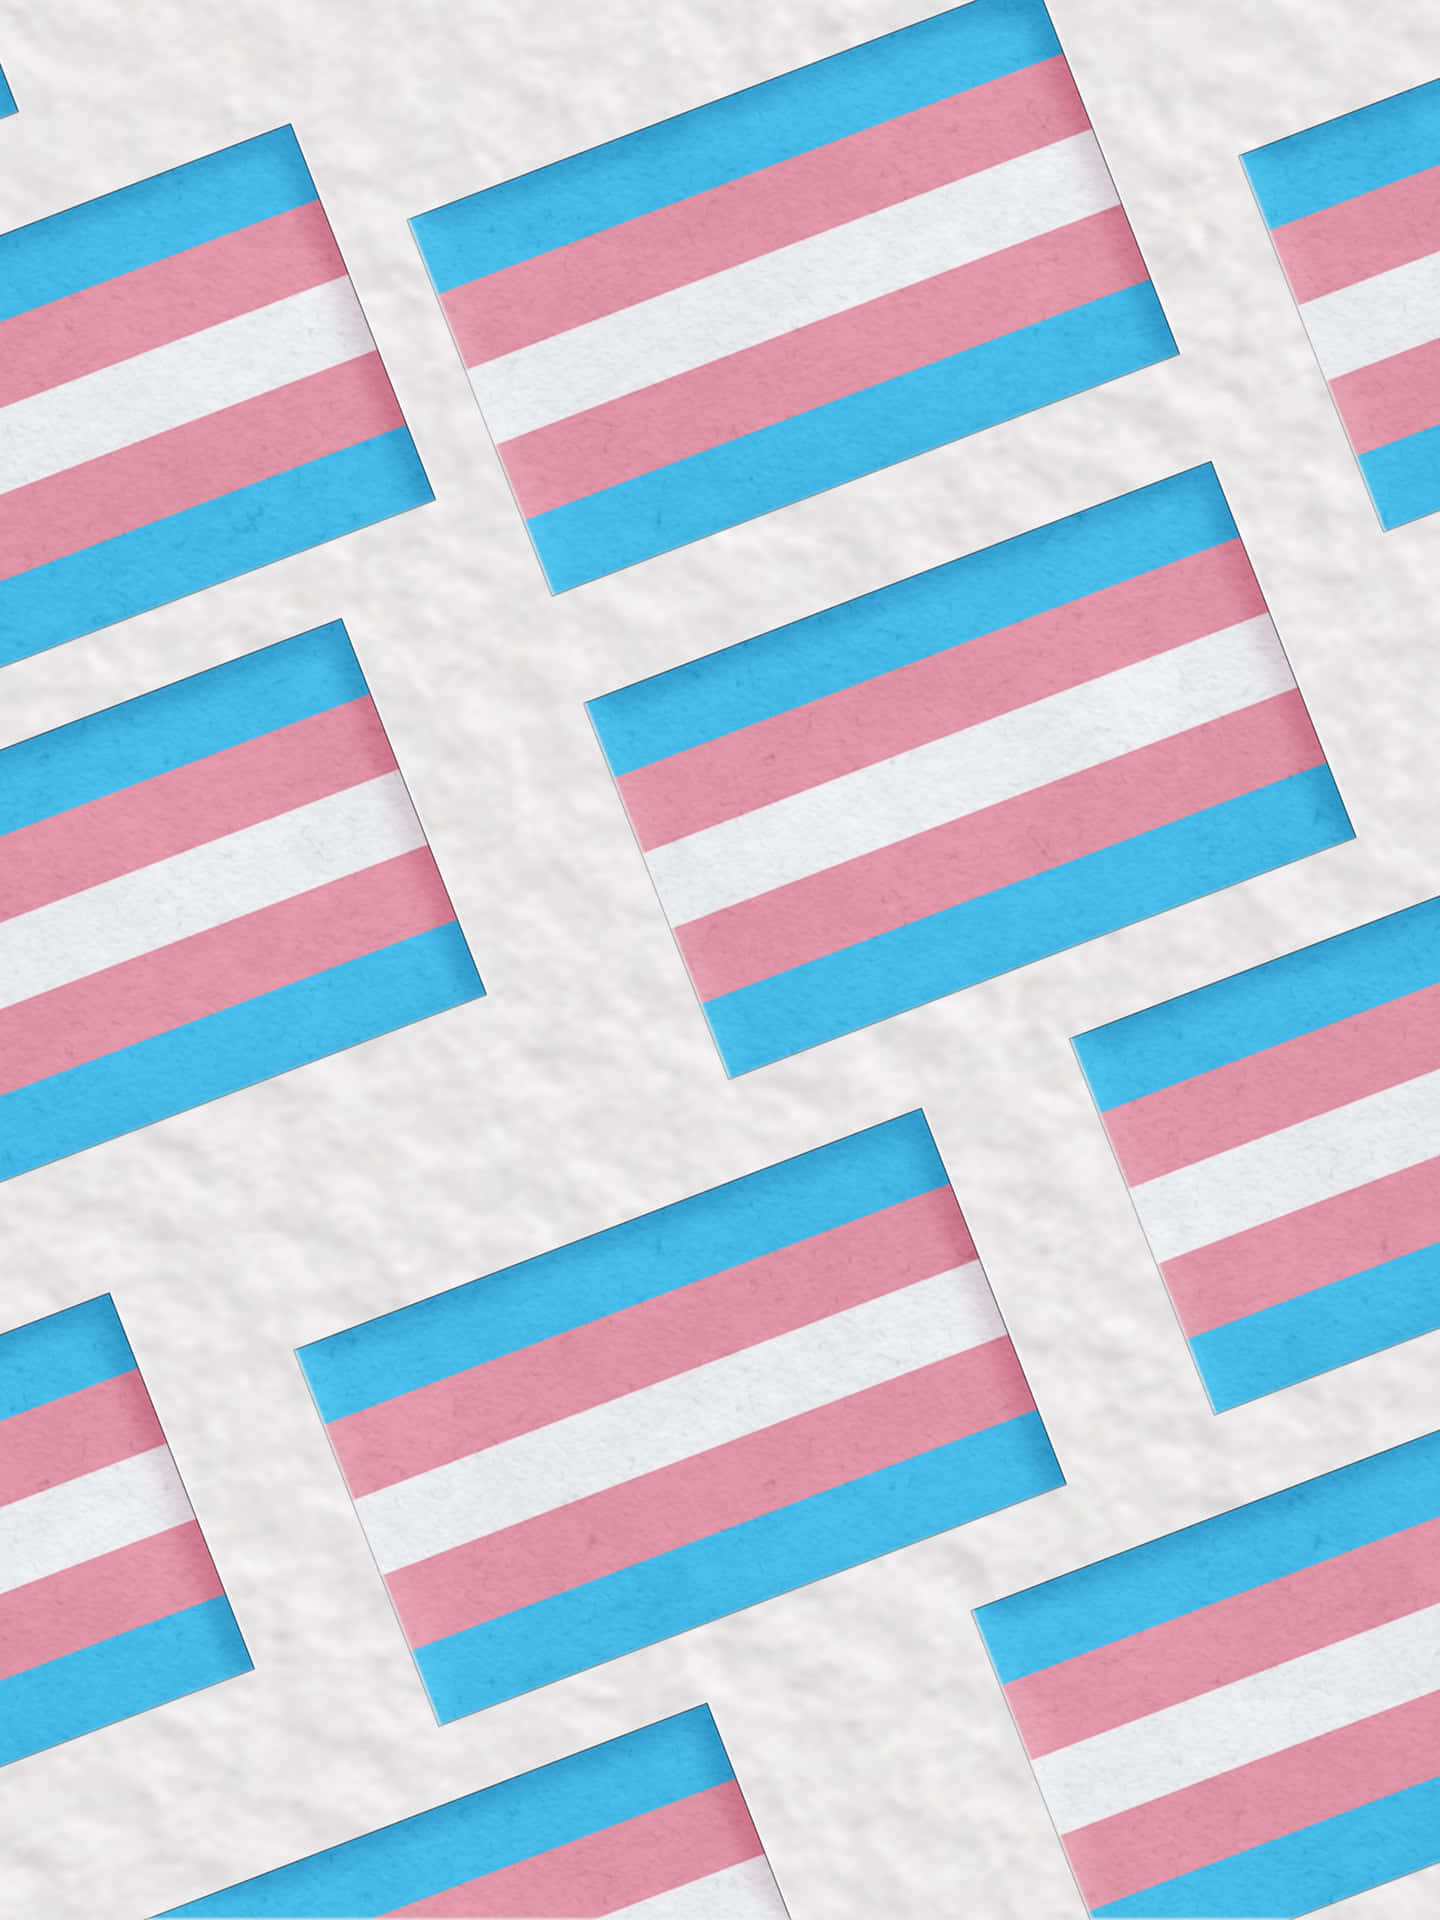 Vis din stolthed og støtte til transgenderfællesskabet med Trans-flaget. Wallpaper